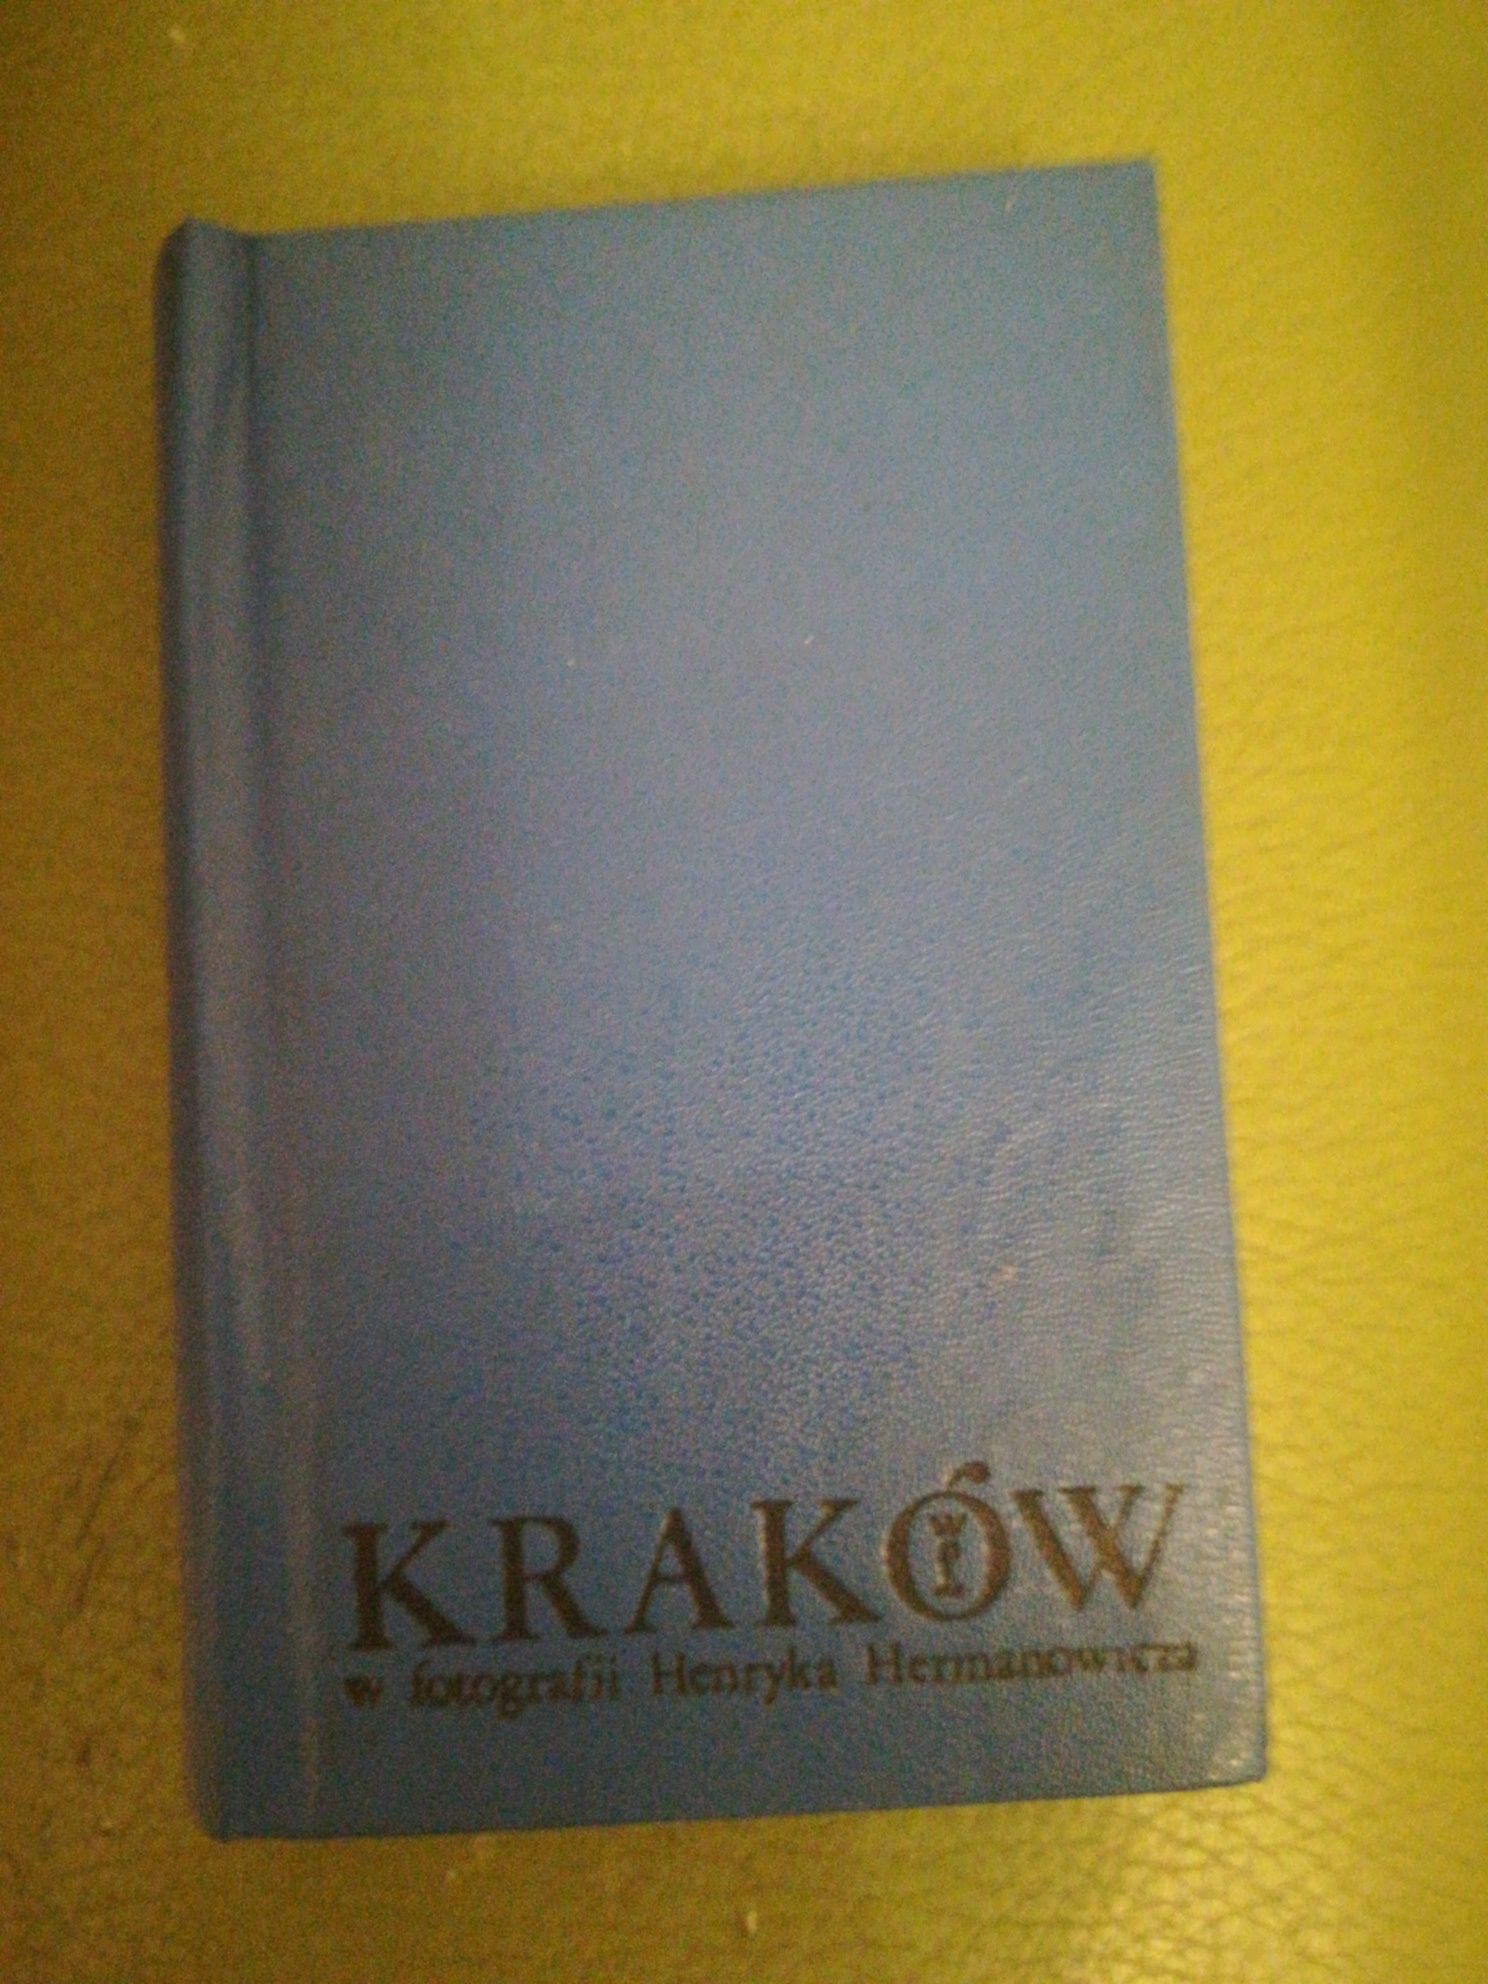 album "Kraków cztery pory roku" fot. Hermanowicz, oprac. J. Banach